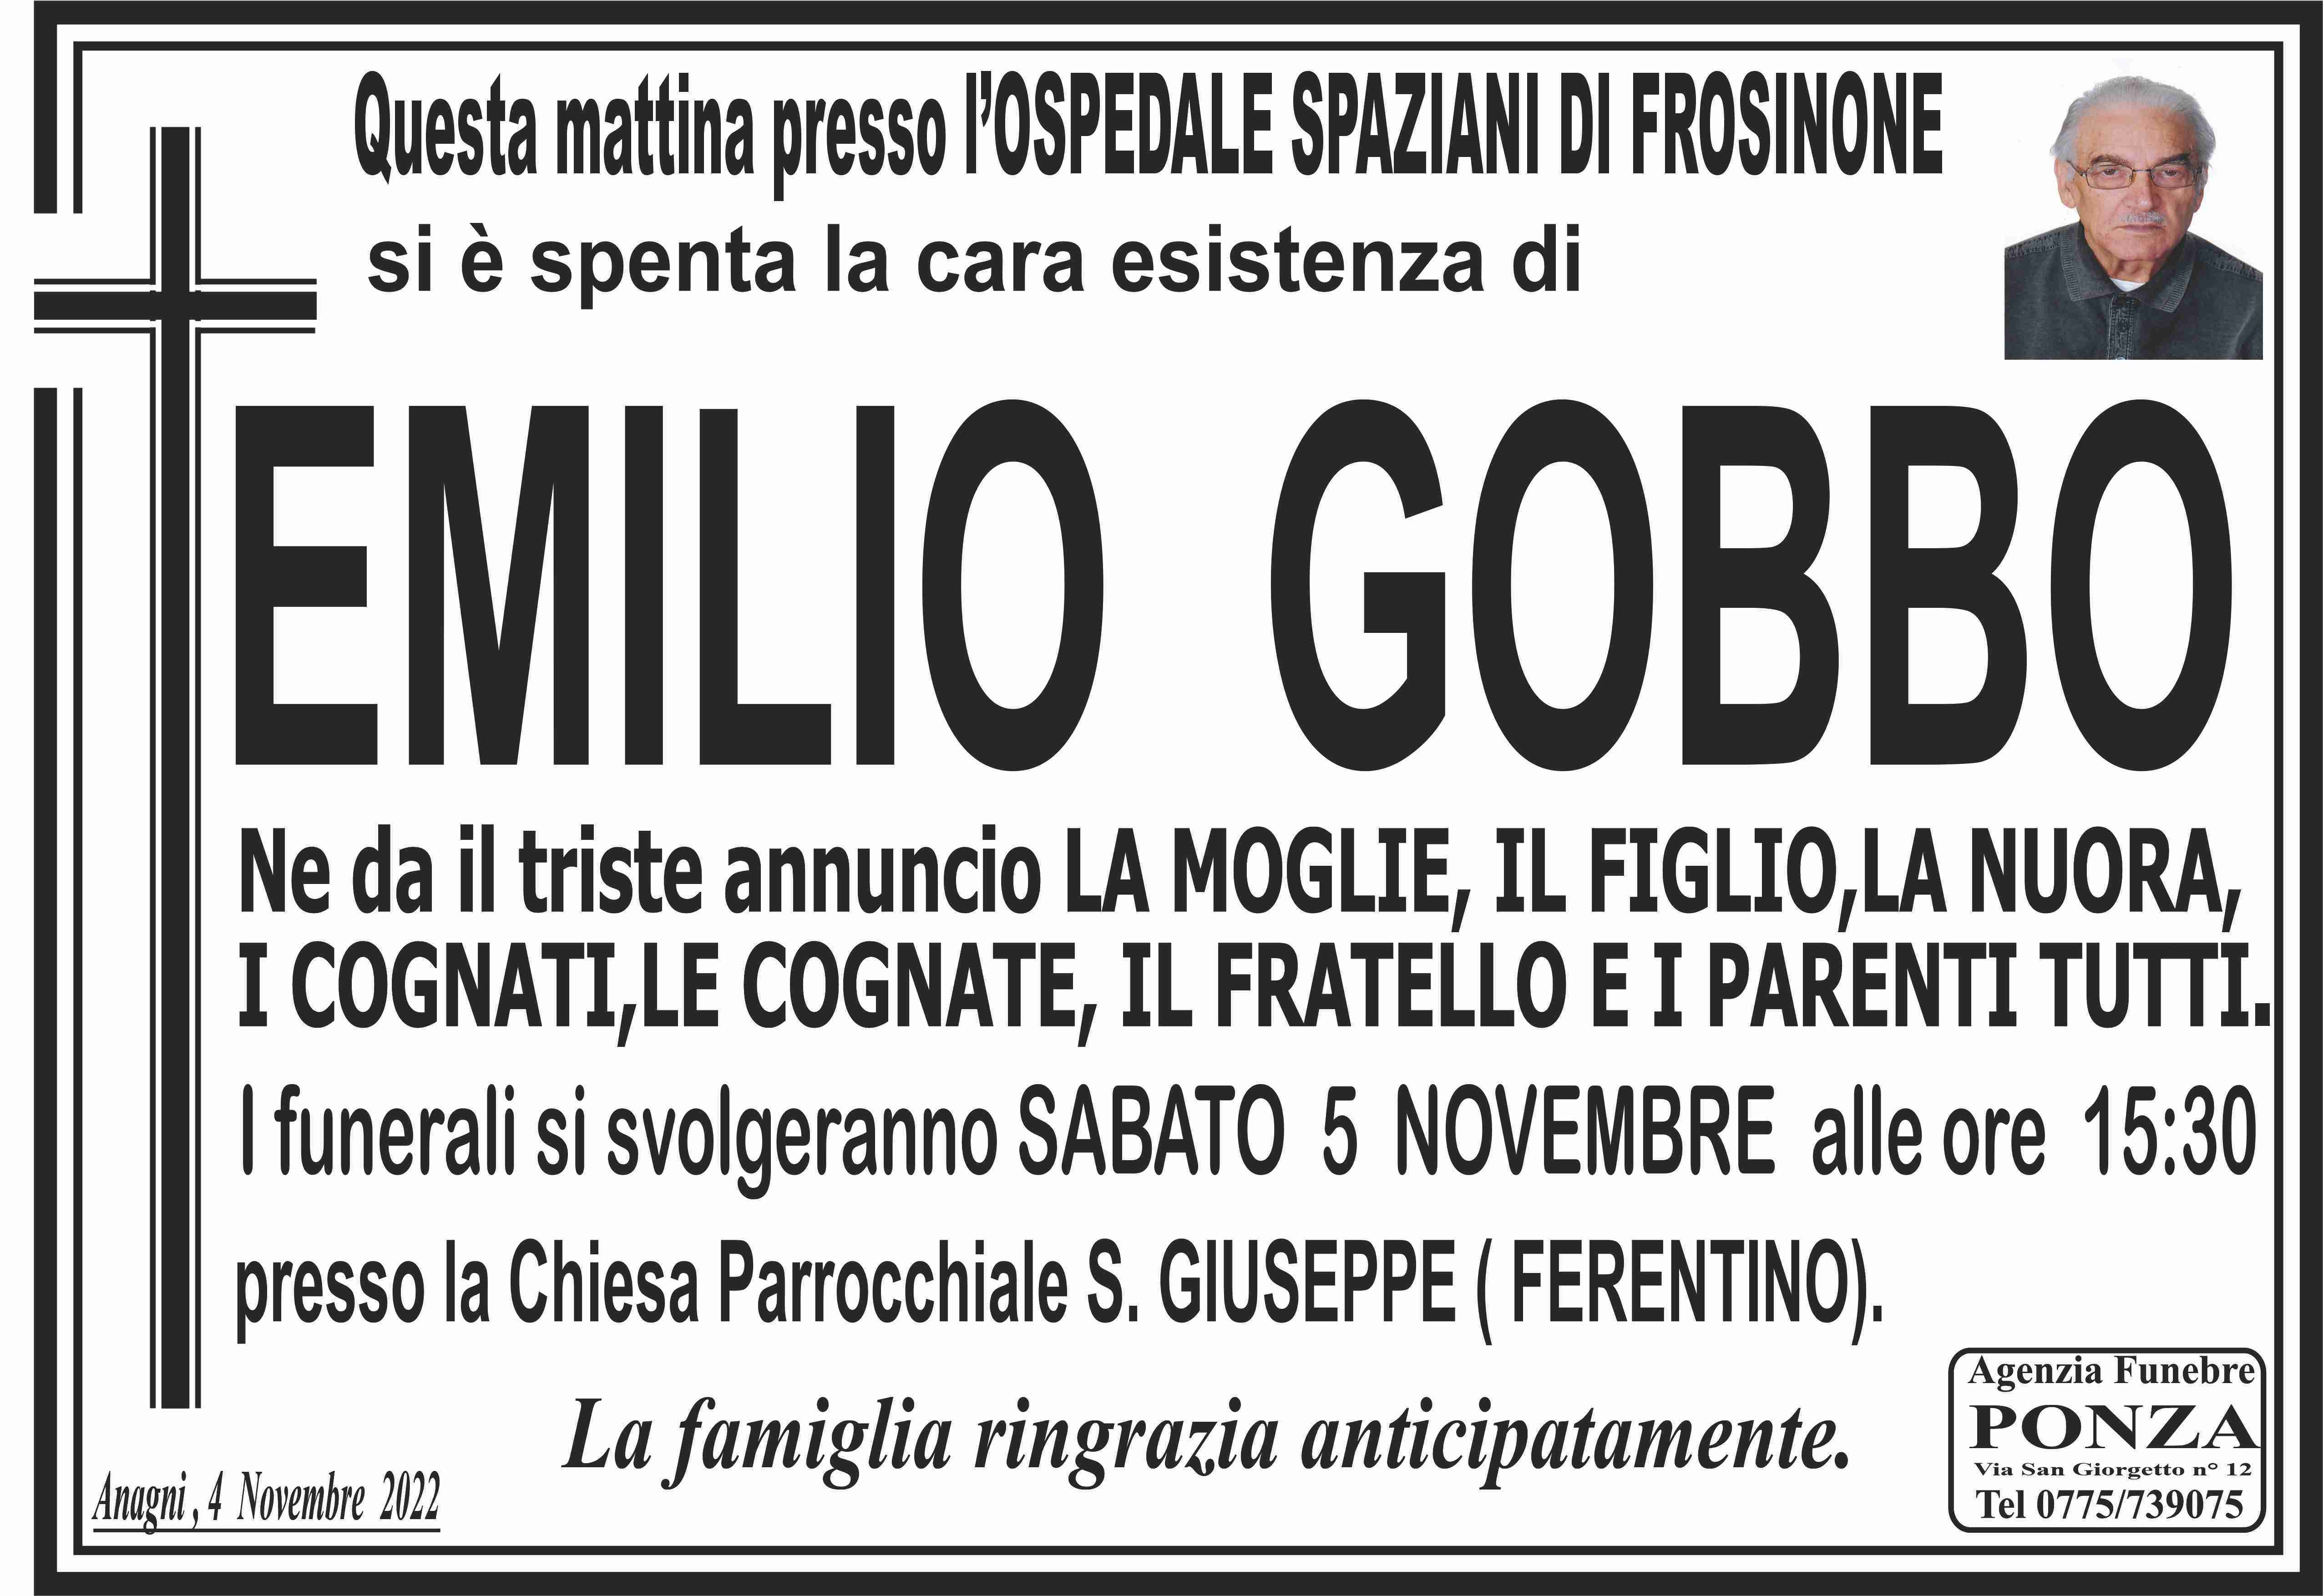 Emilio Gobbo